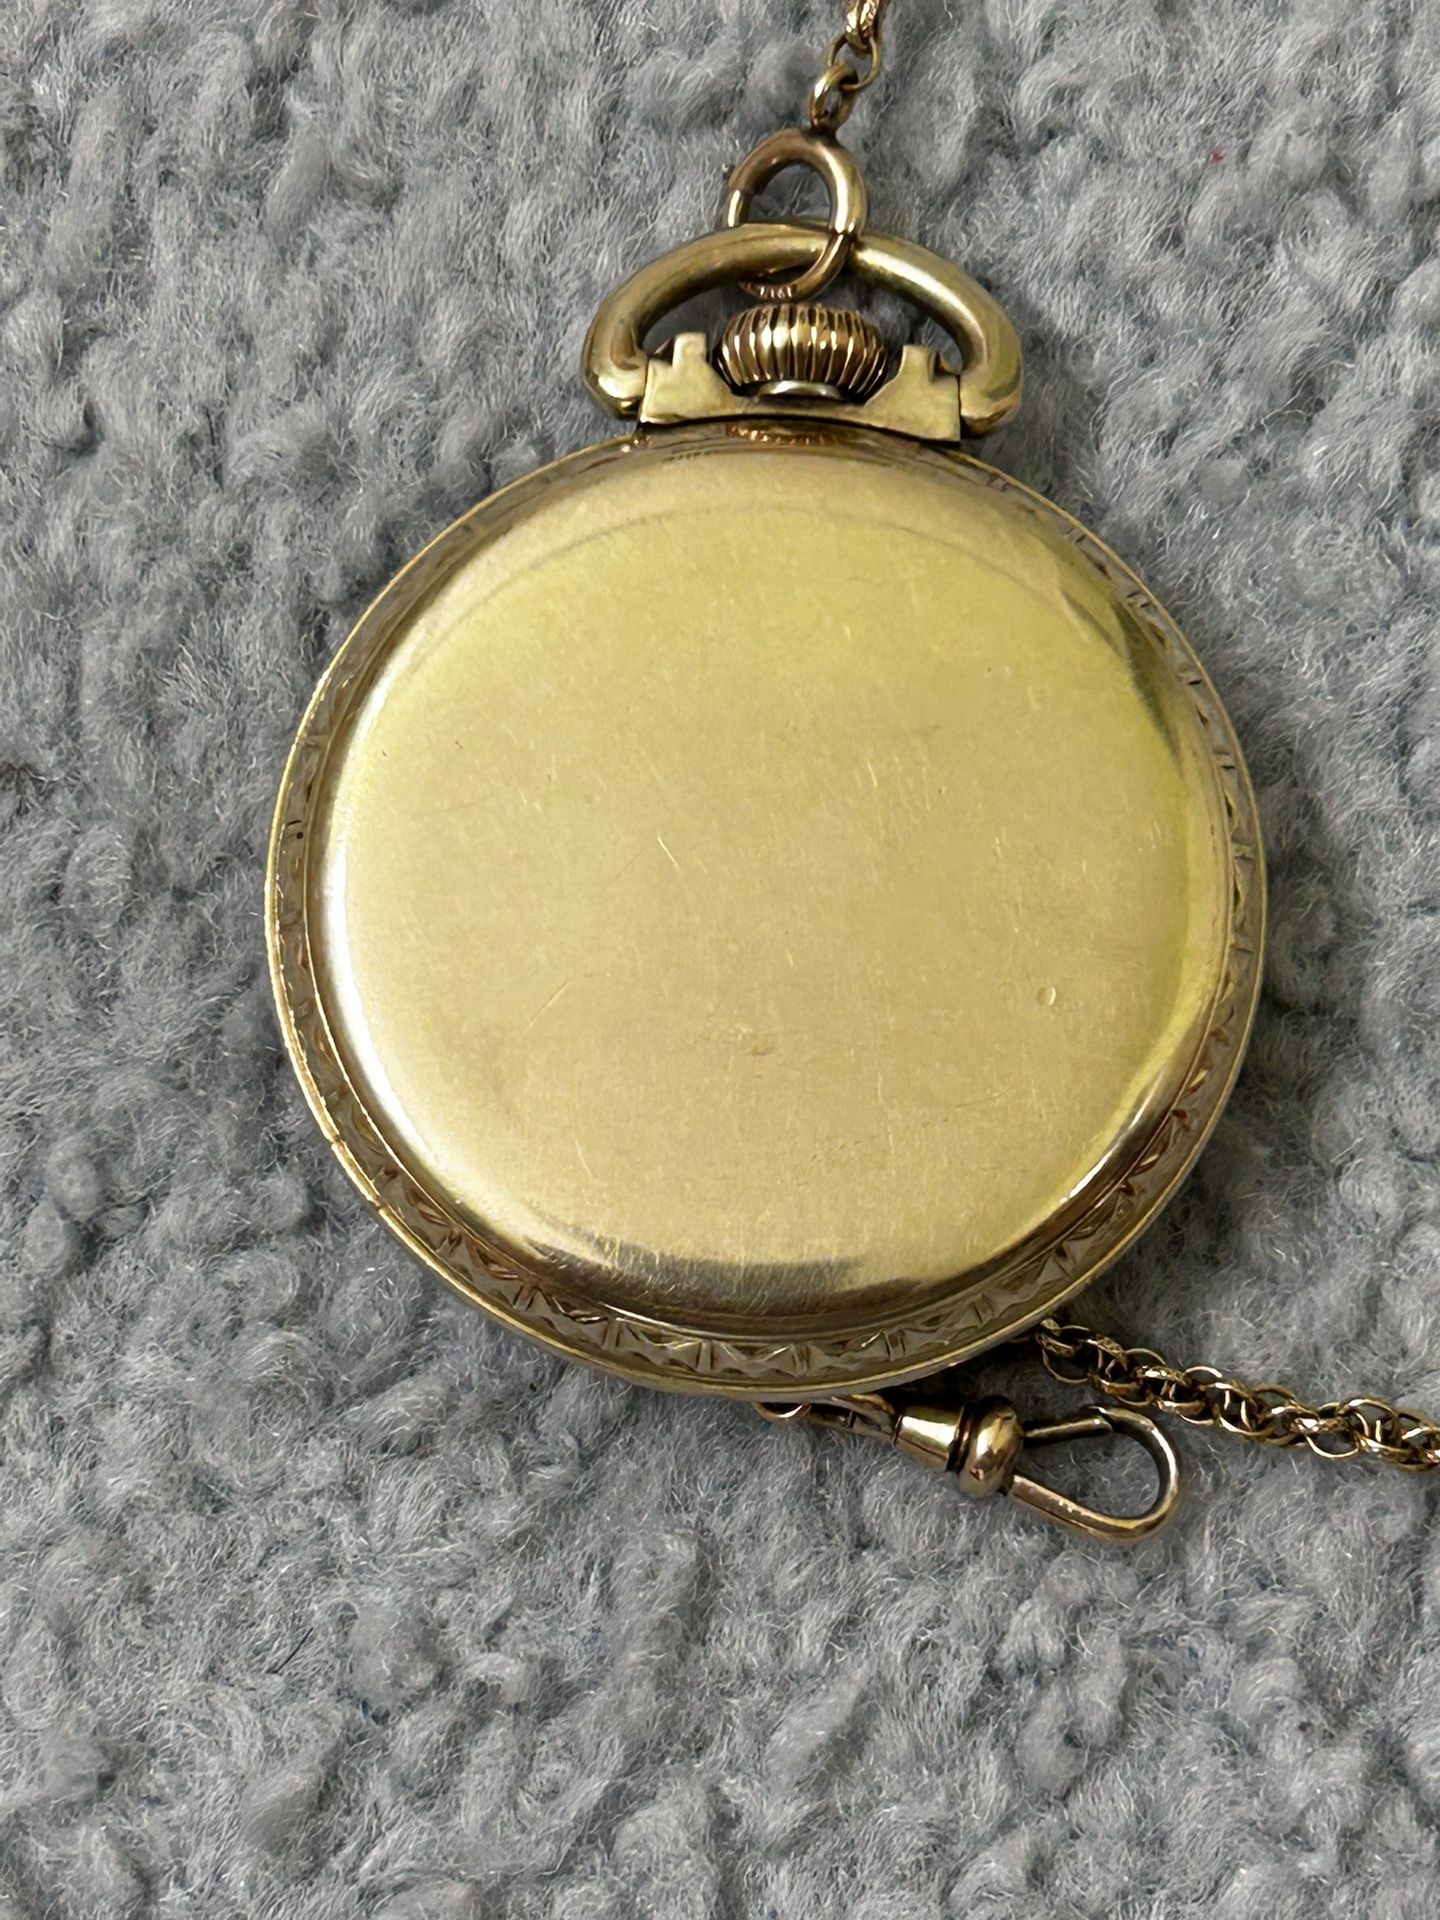 Vintage Elgin Pocket Watch, 10 Kt Gold Filled, Work Perfectly